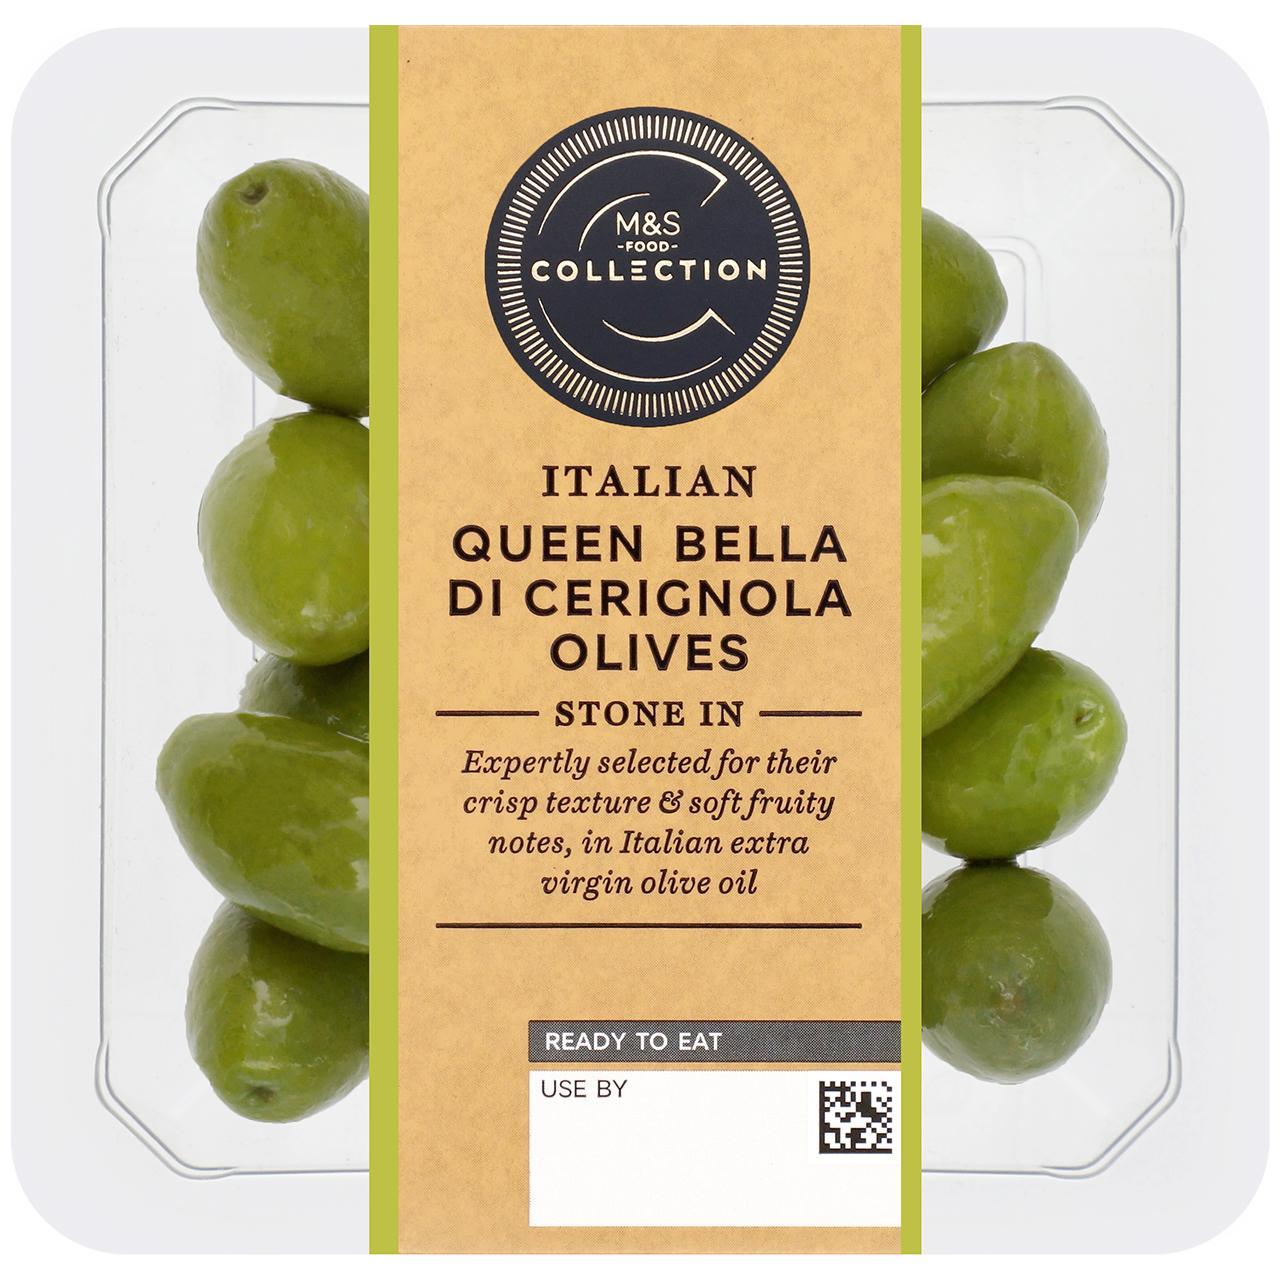 M&S Collection Bella Di Cerignola Olives